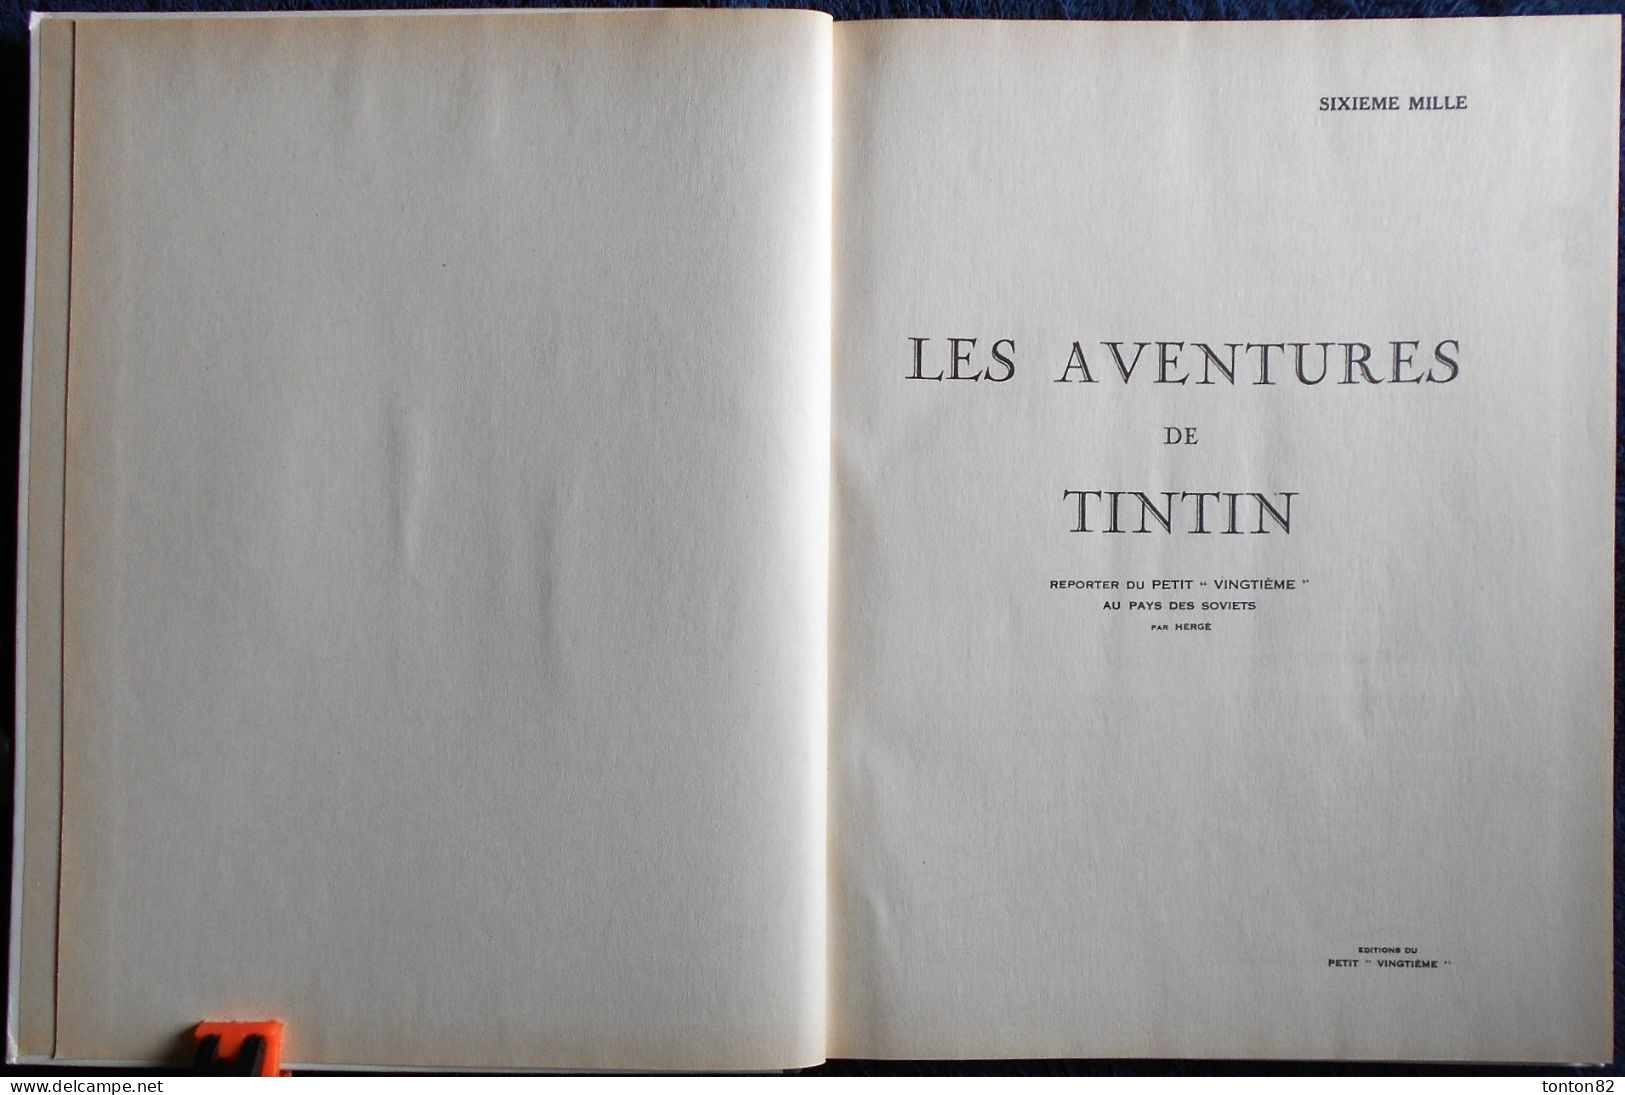 Les aventures de Tintin, reporter du petit Vingtième, aux pays des Soviets:  Reporter de 'Petit Vingtieme': 1